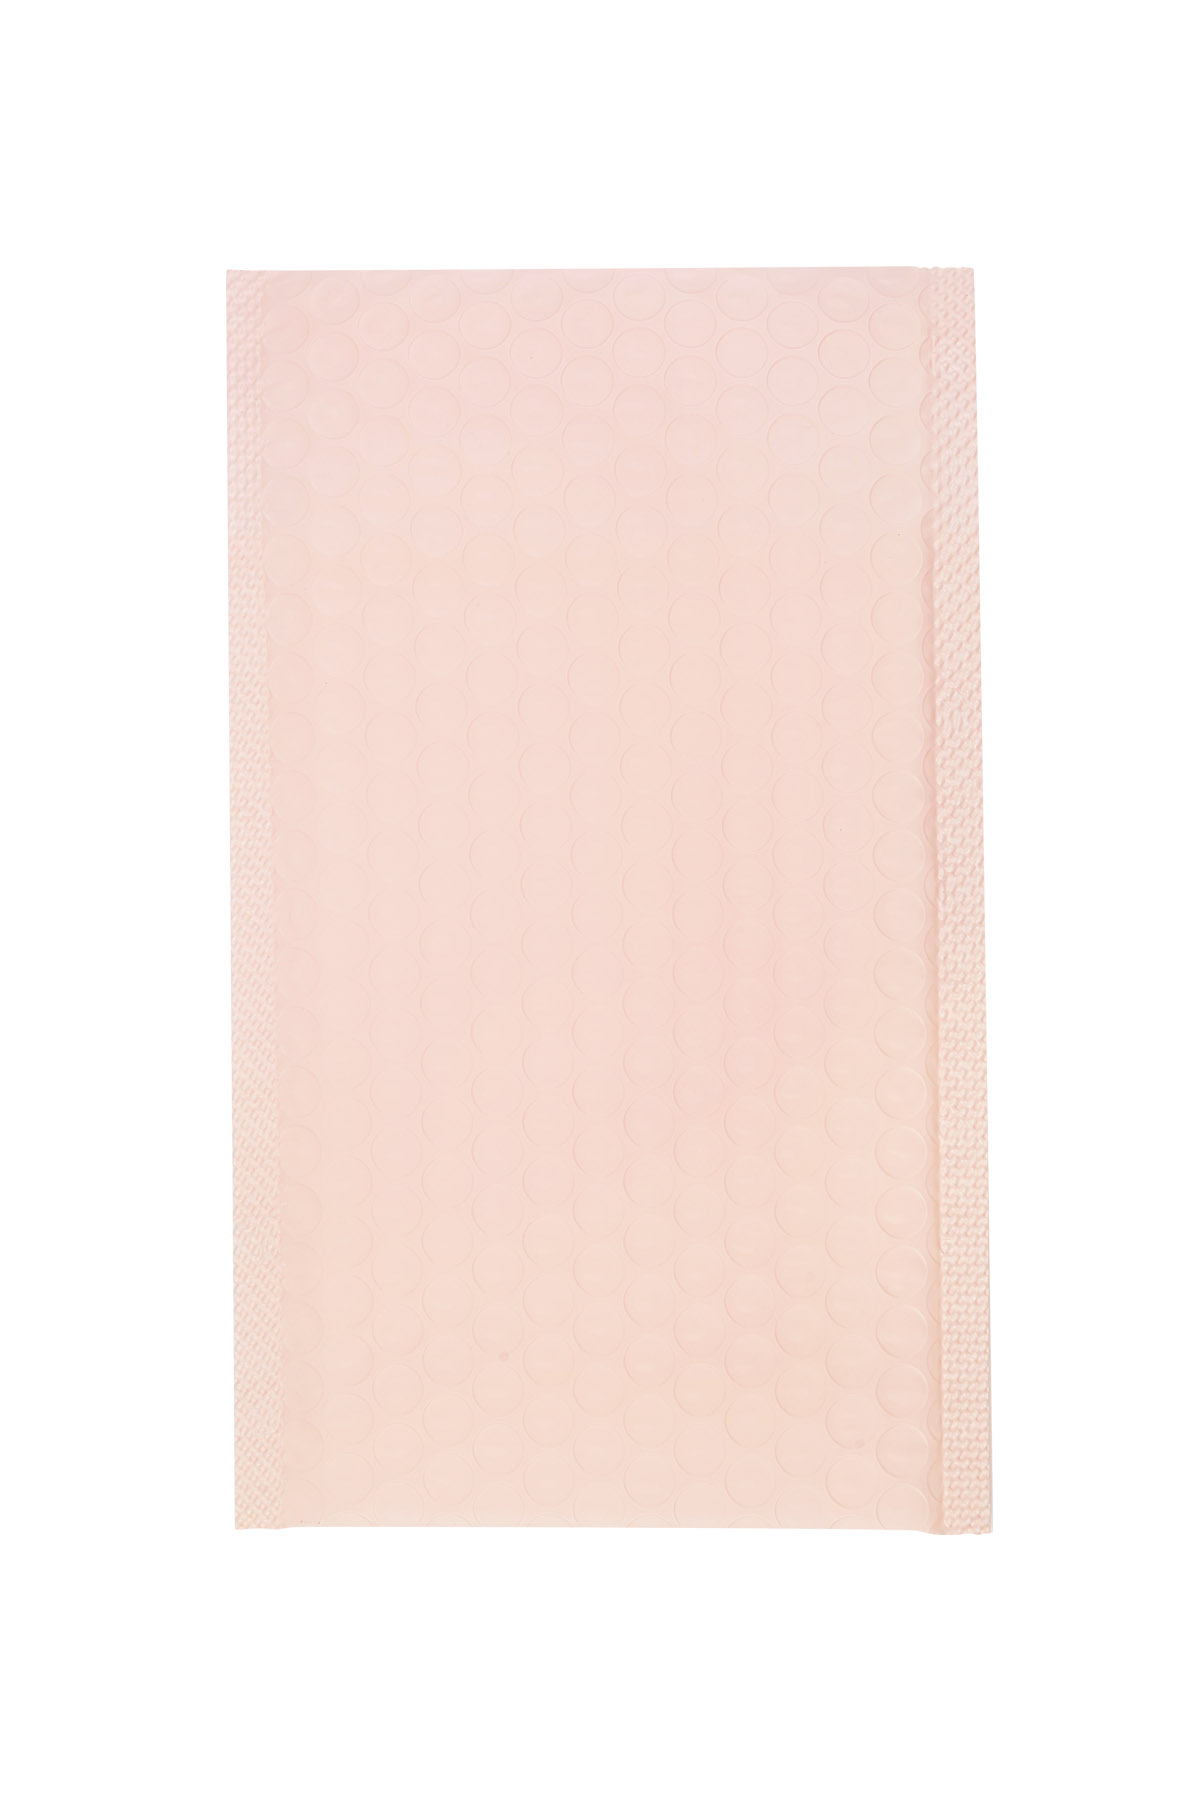 Busta postale a bolle - rosa pastello Plastica h5 